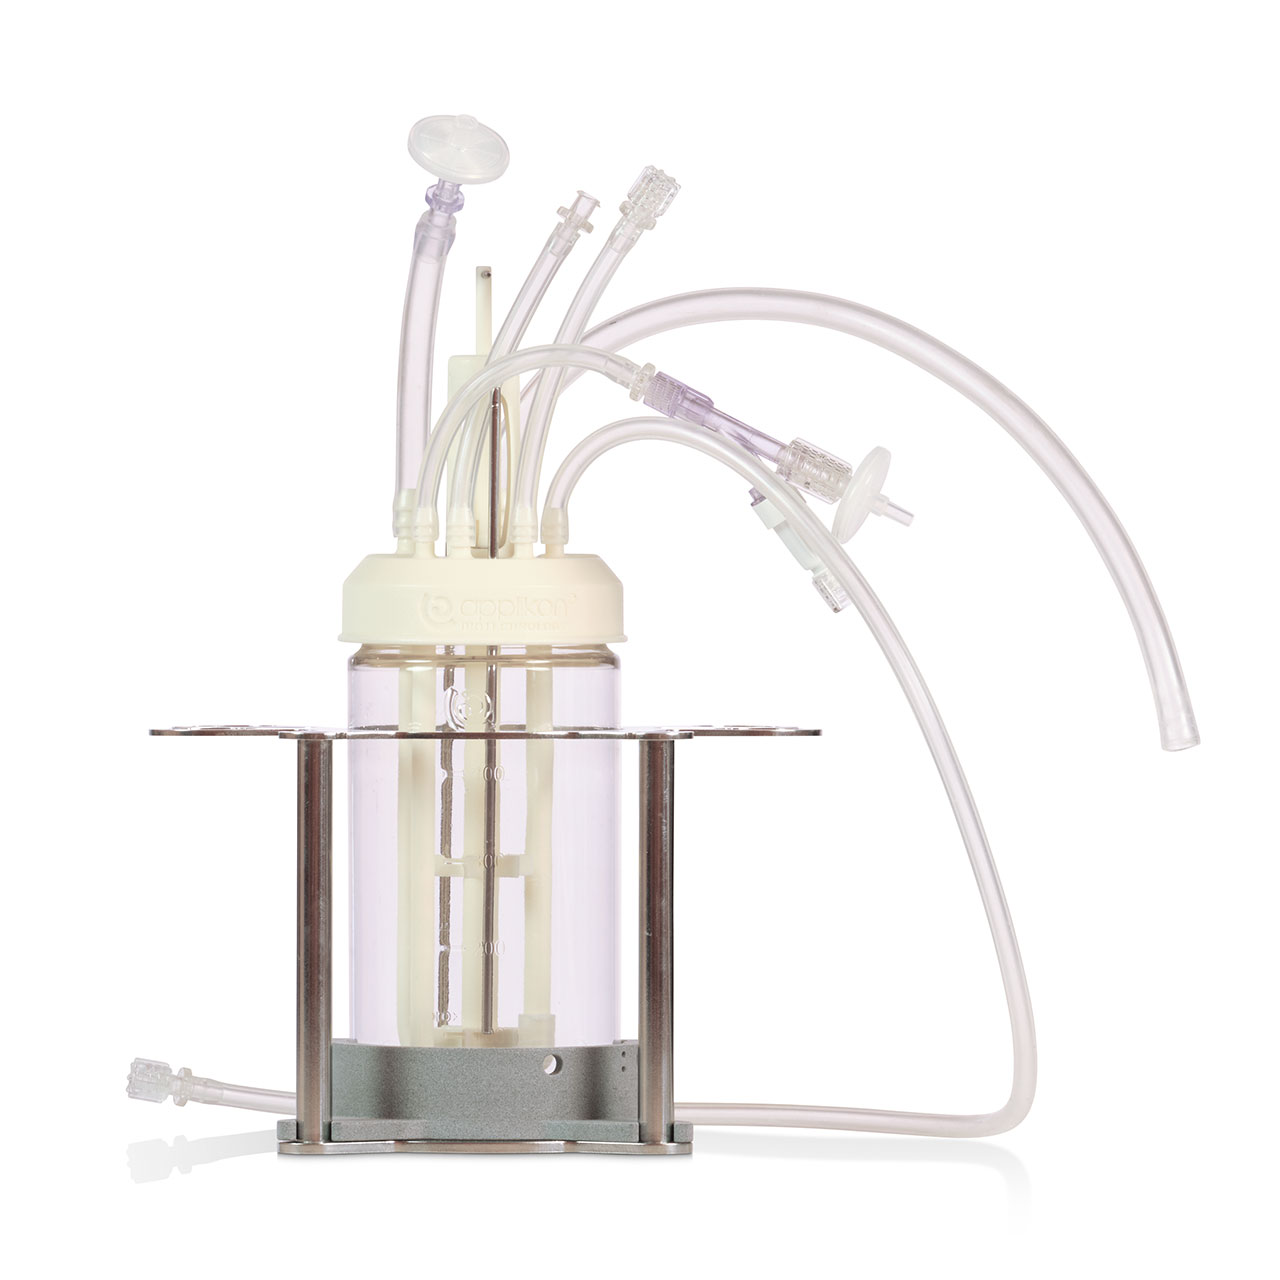 The 500 mL single-use laboratory scale AppliFlex bioreactor